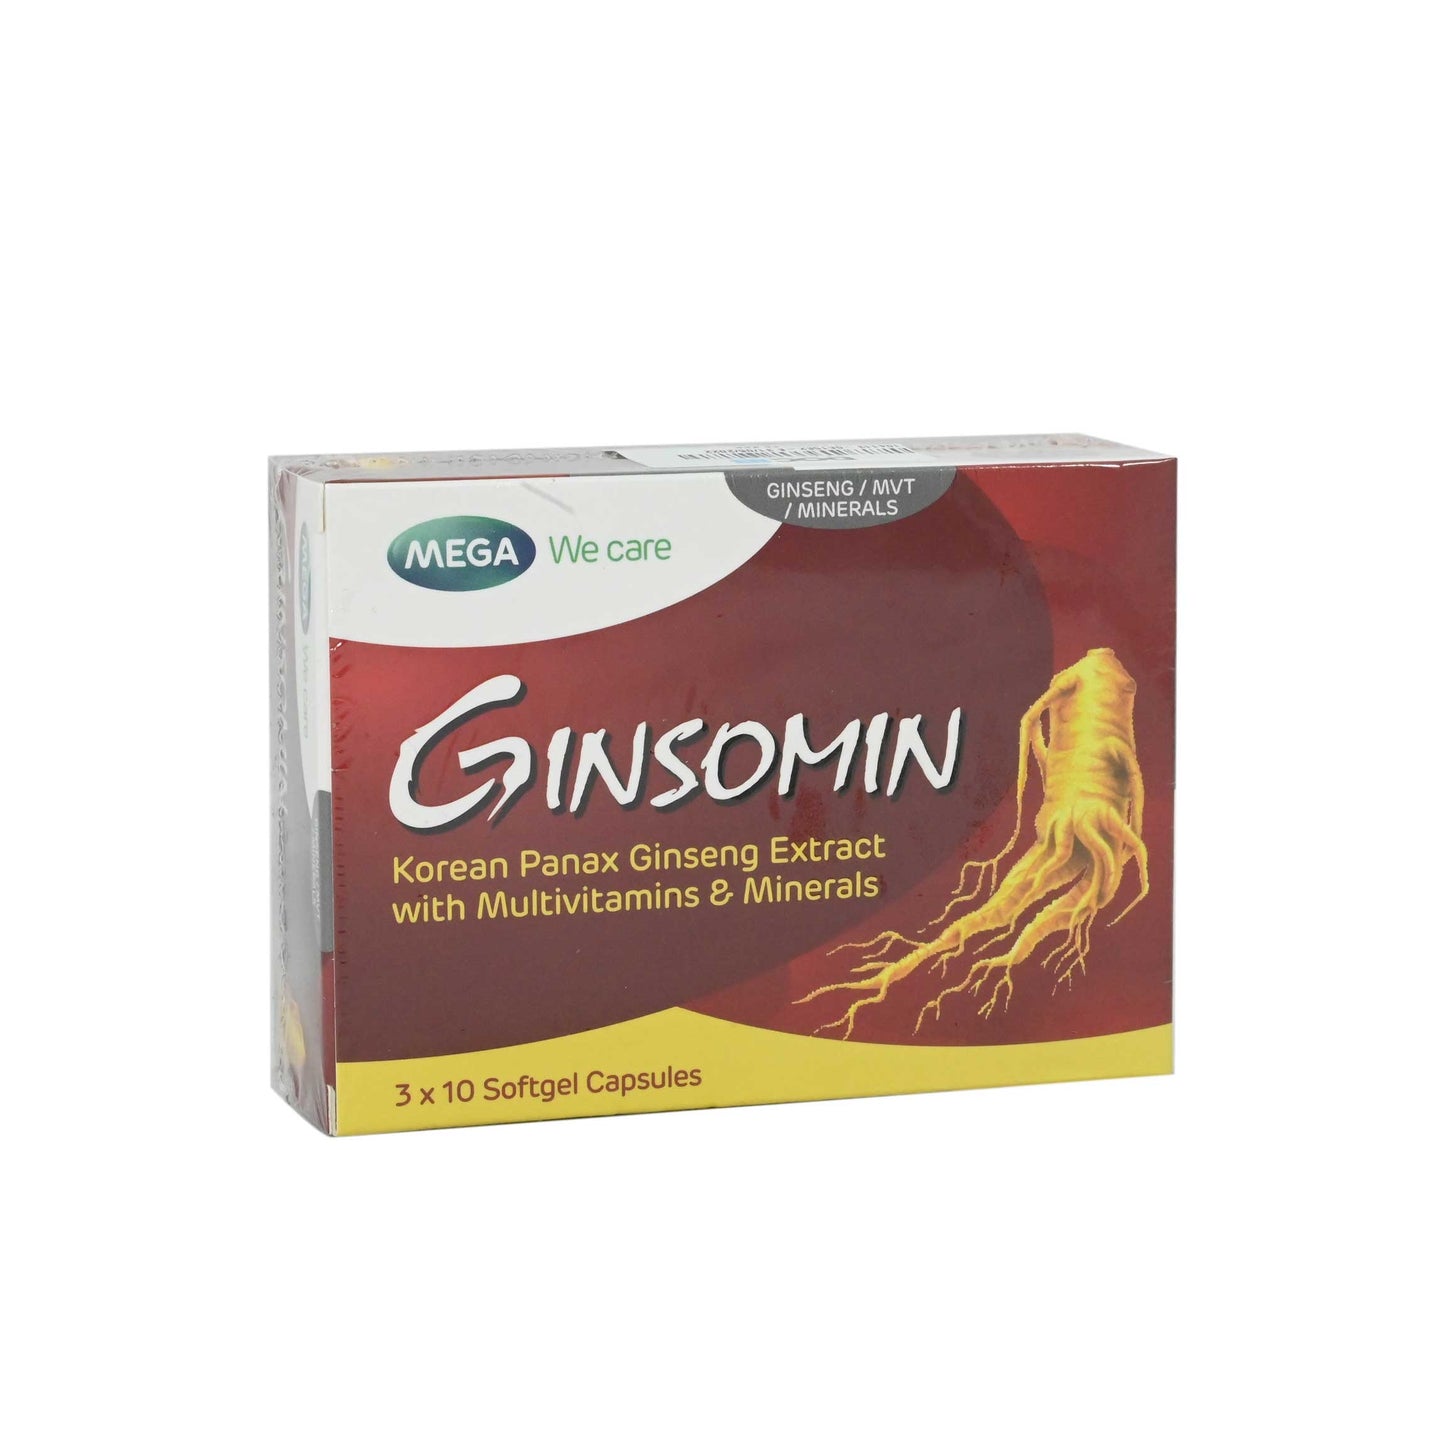 GINSOMIN - E-Pharmacy Ghana